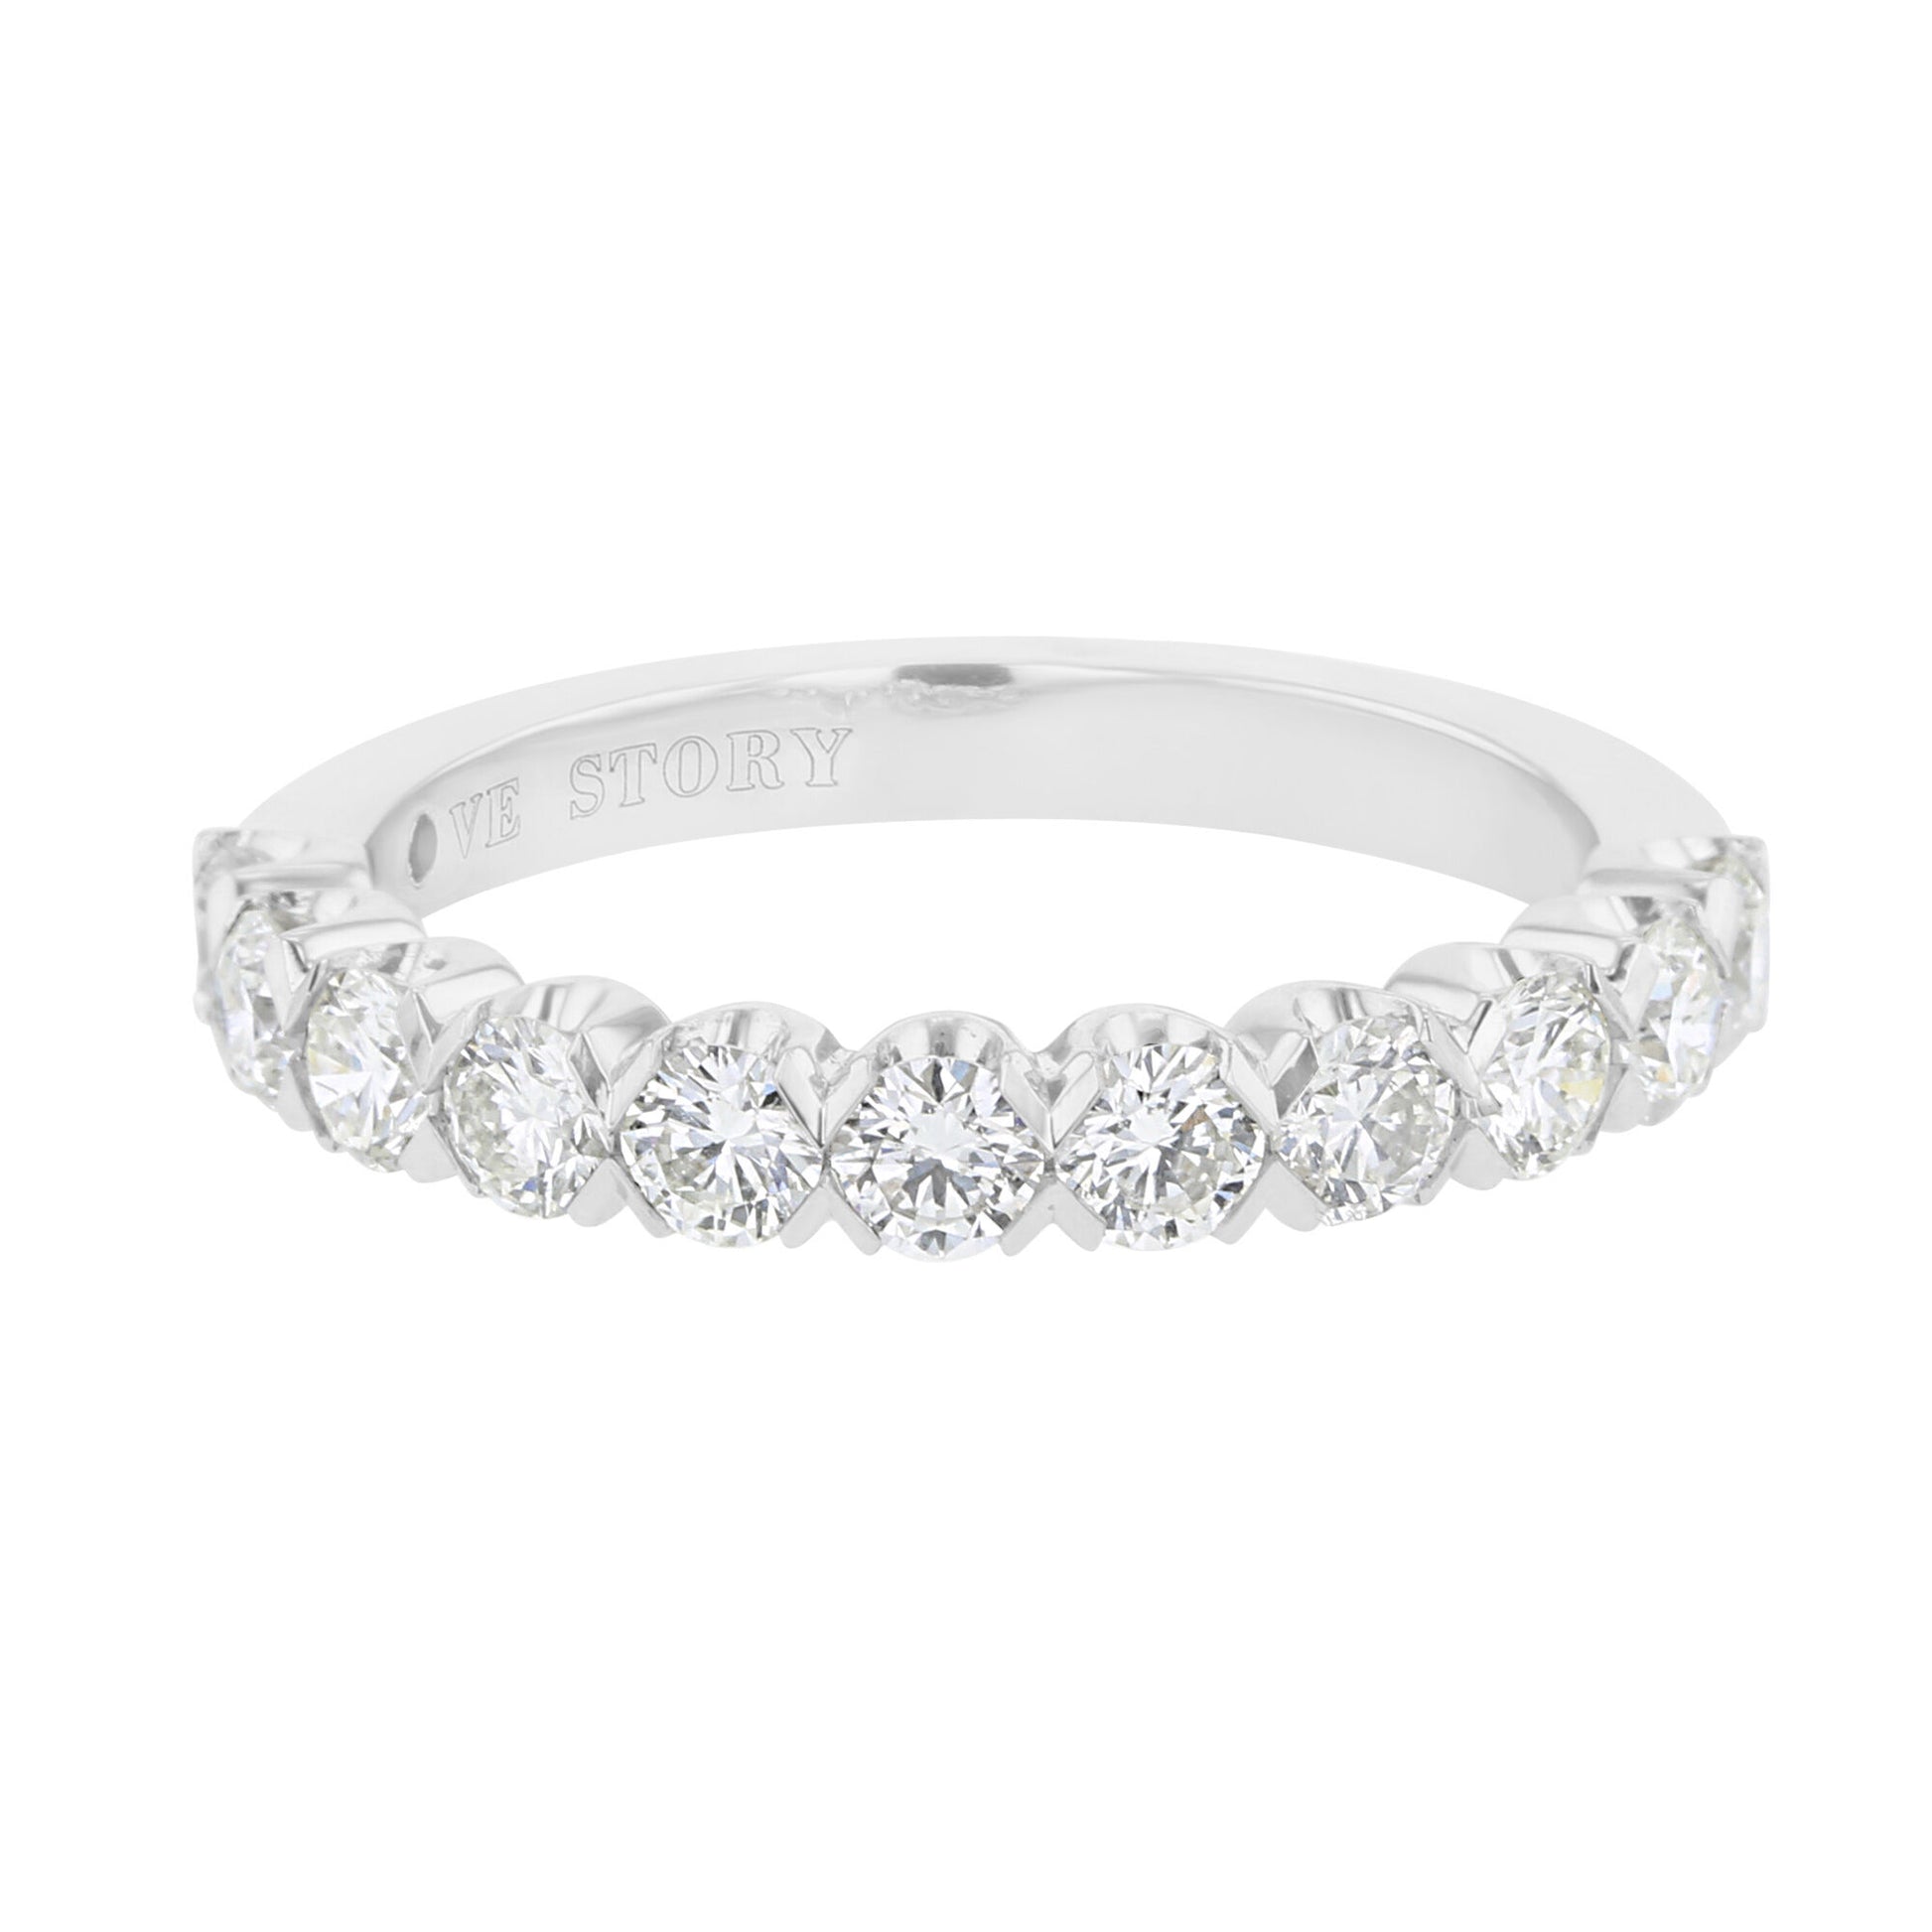 Toni Diamond Wedding Ring 1ct